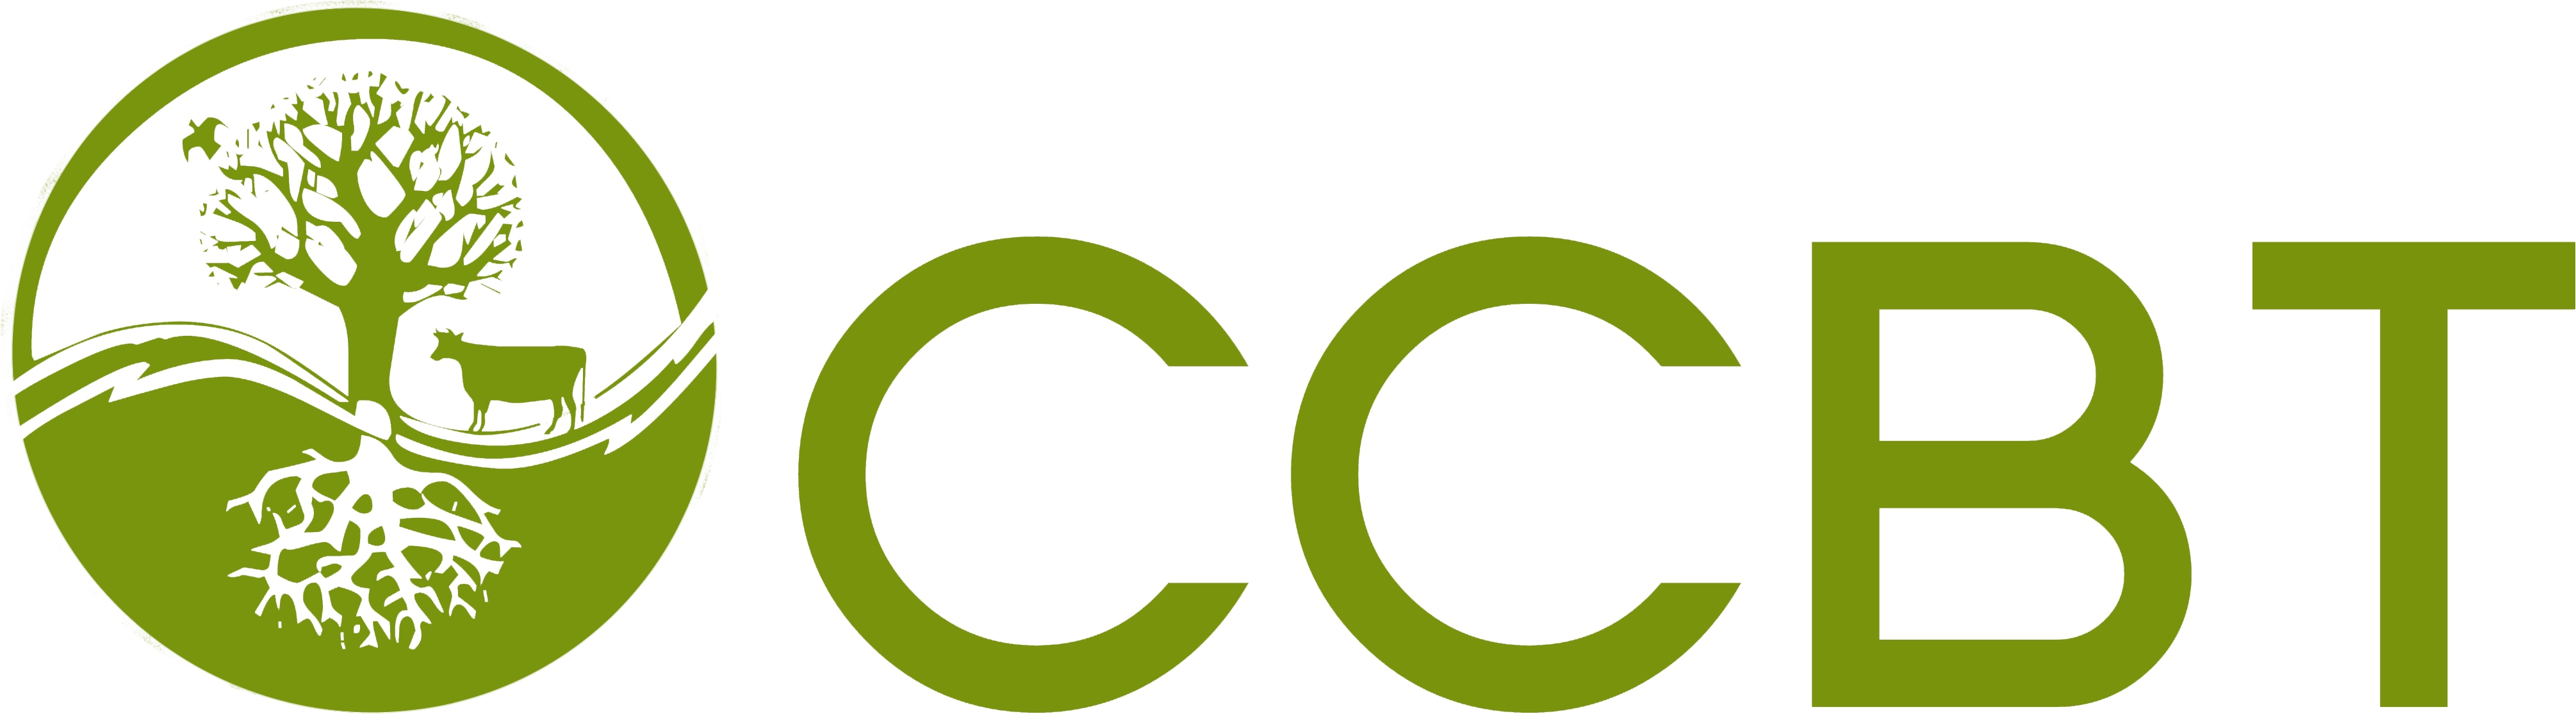 ccbt logo